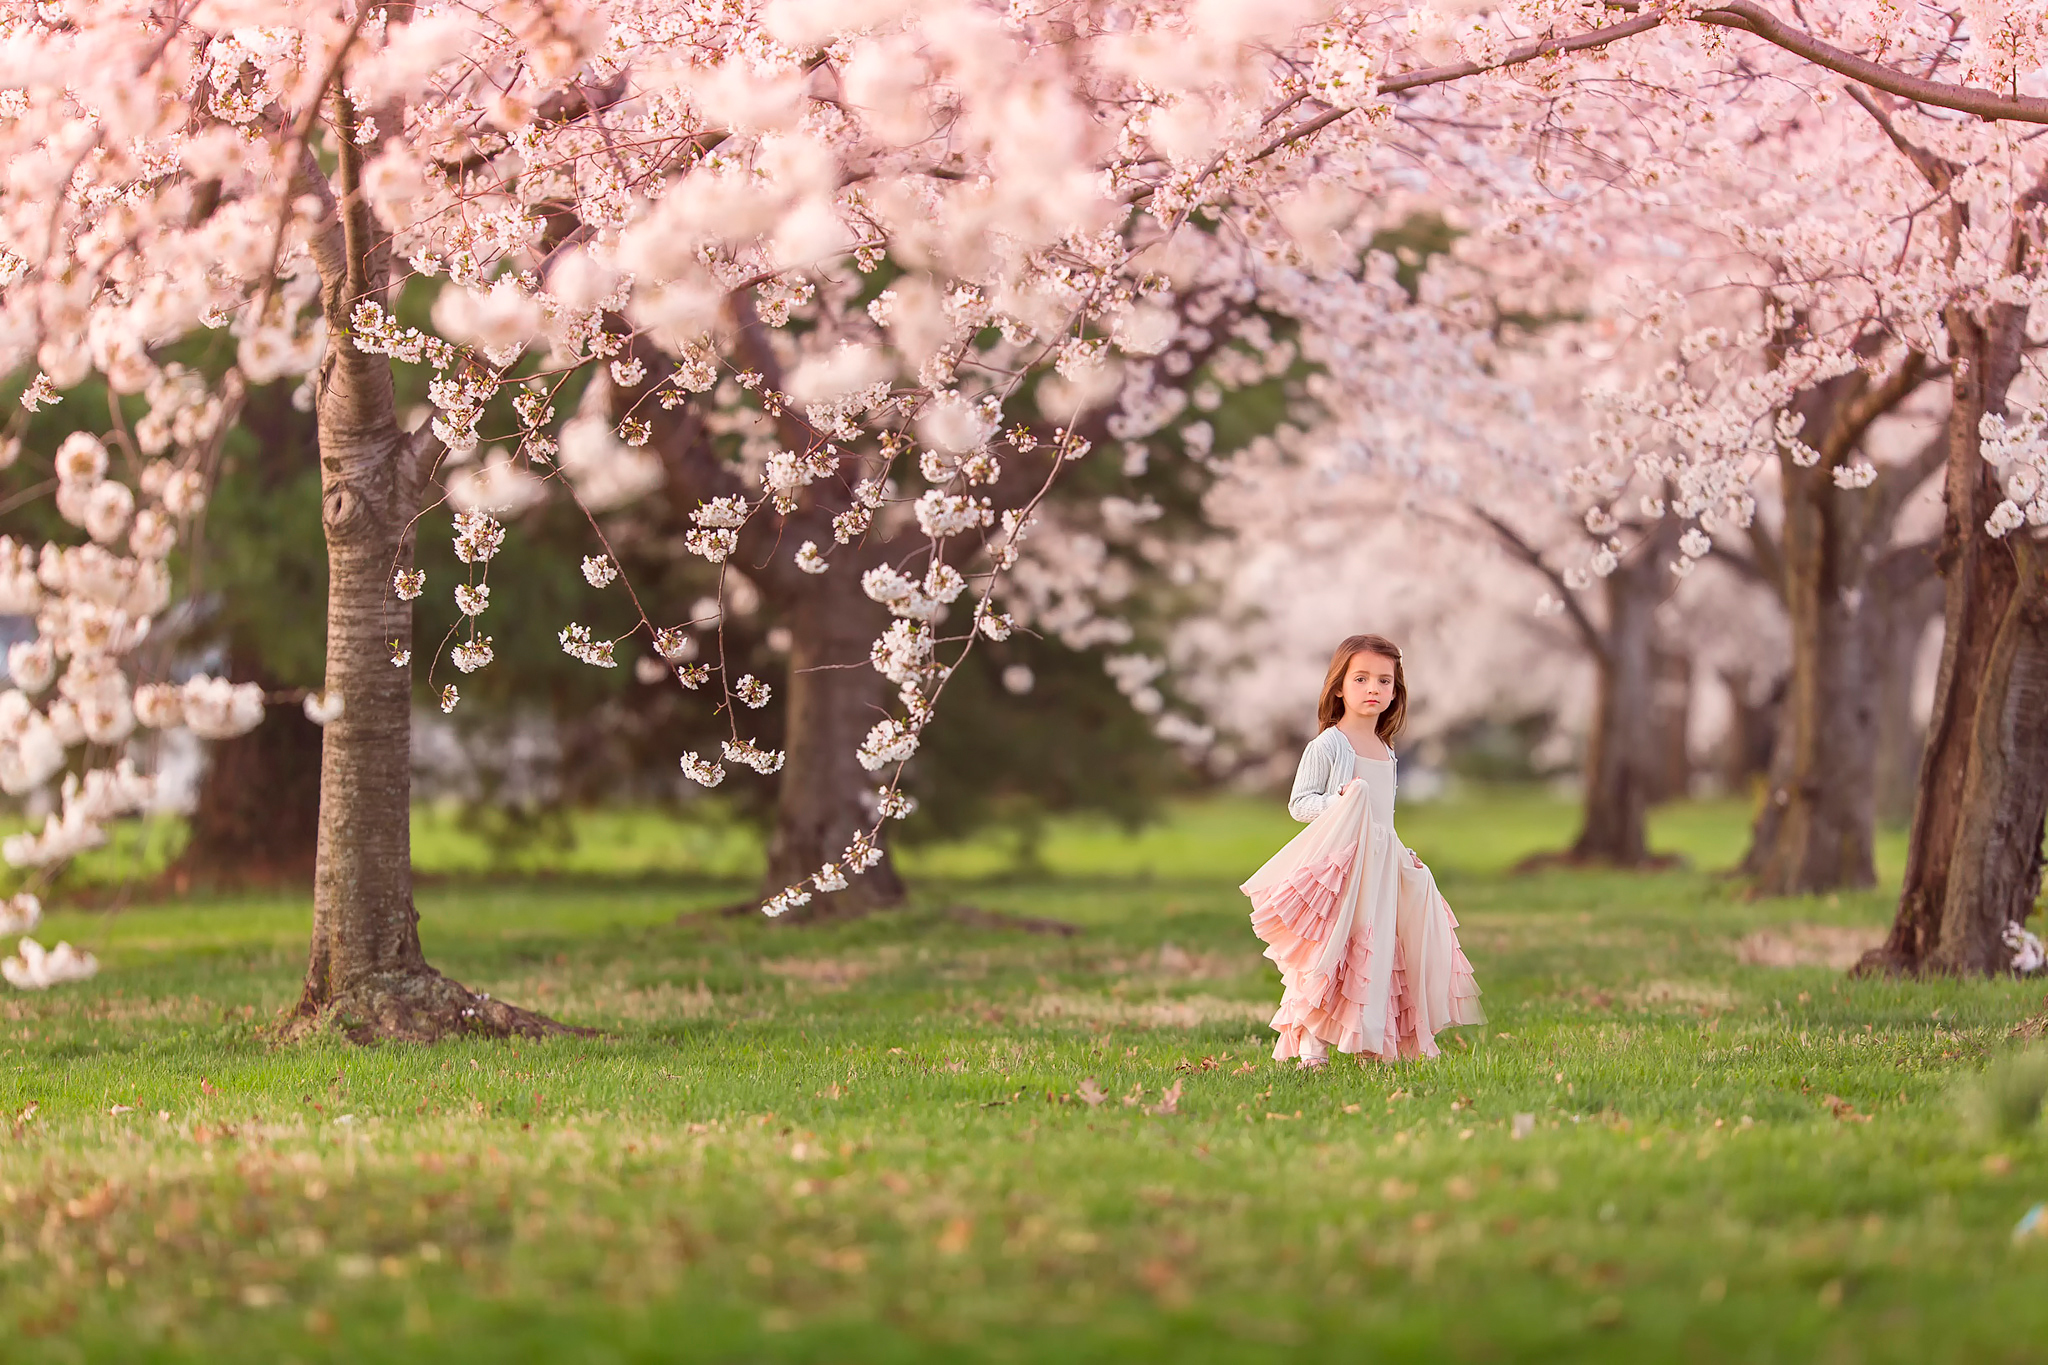 Скачать обои весна, девочка, цветение, Cherry blossoms, раздел природа в ра...